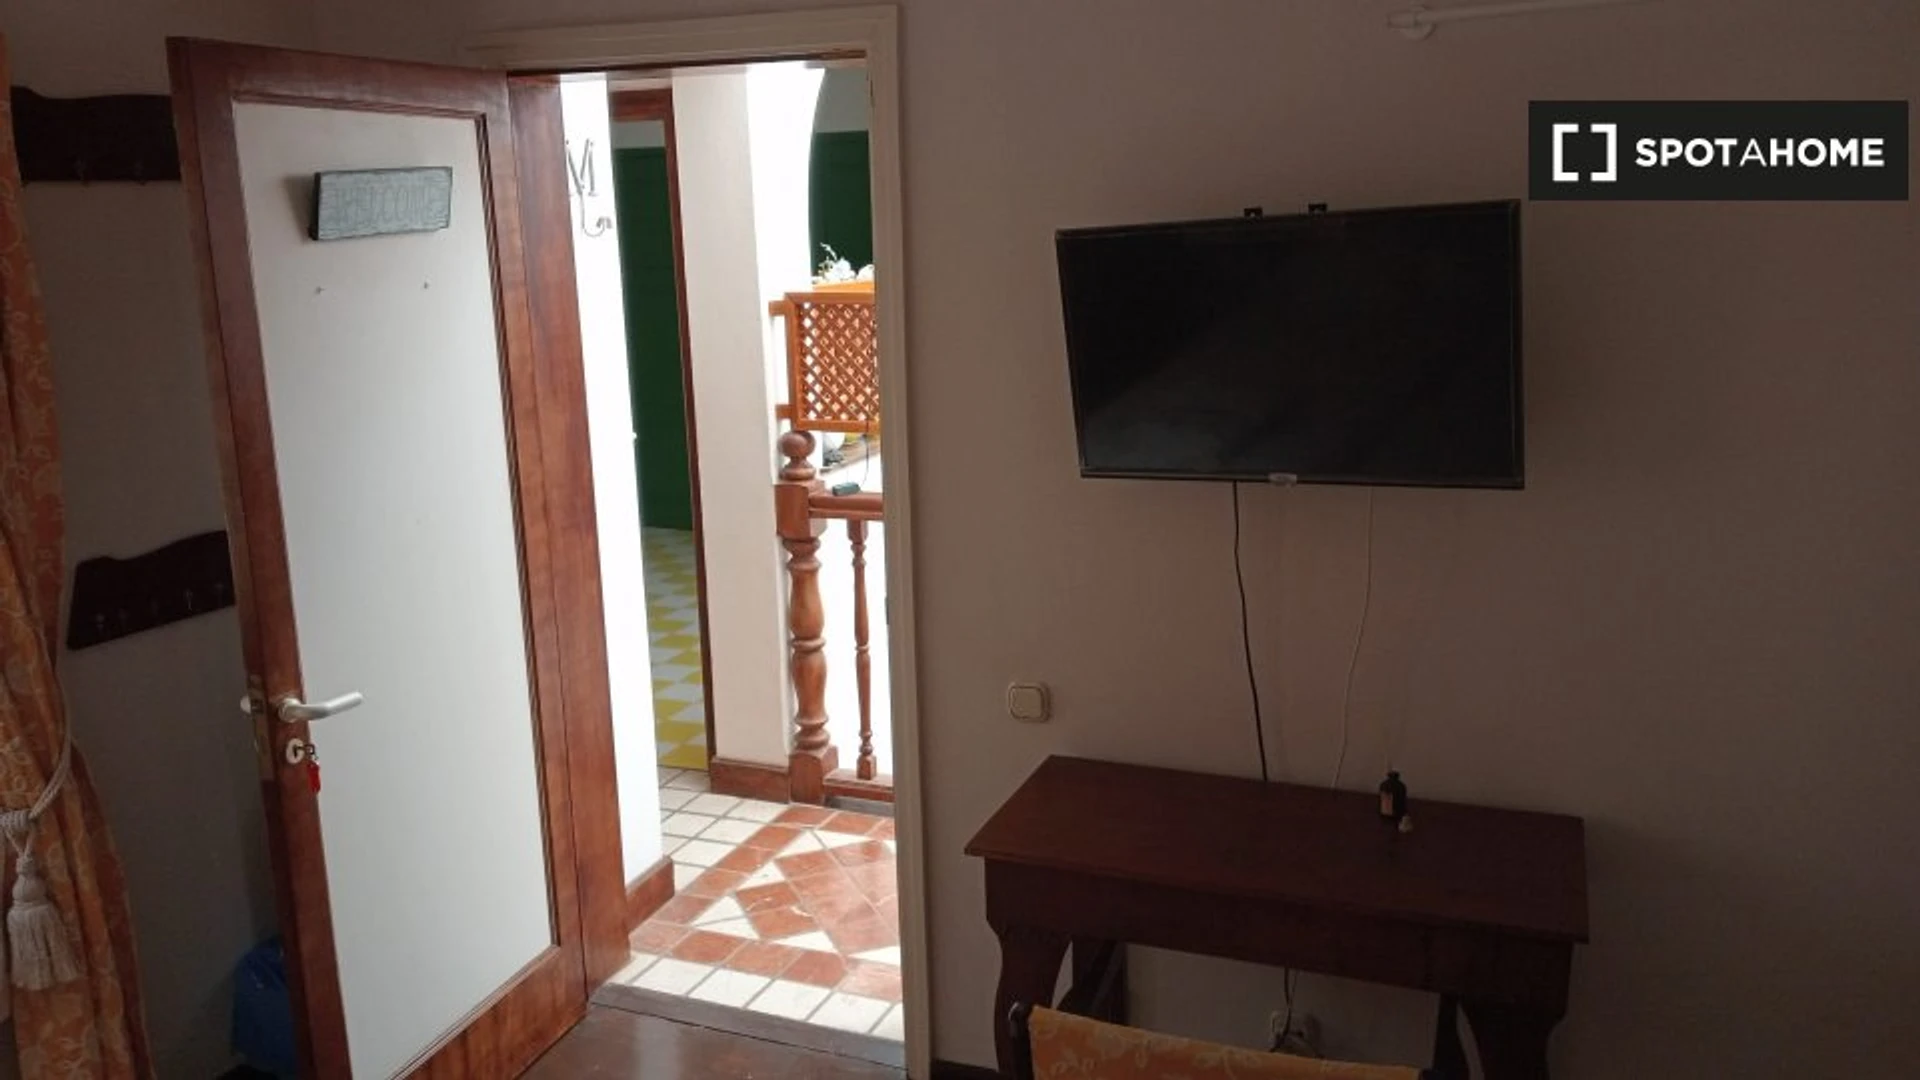 Quarto para alugar num apartamento partilhado em Las Palmas (gran Canaria)